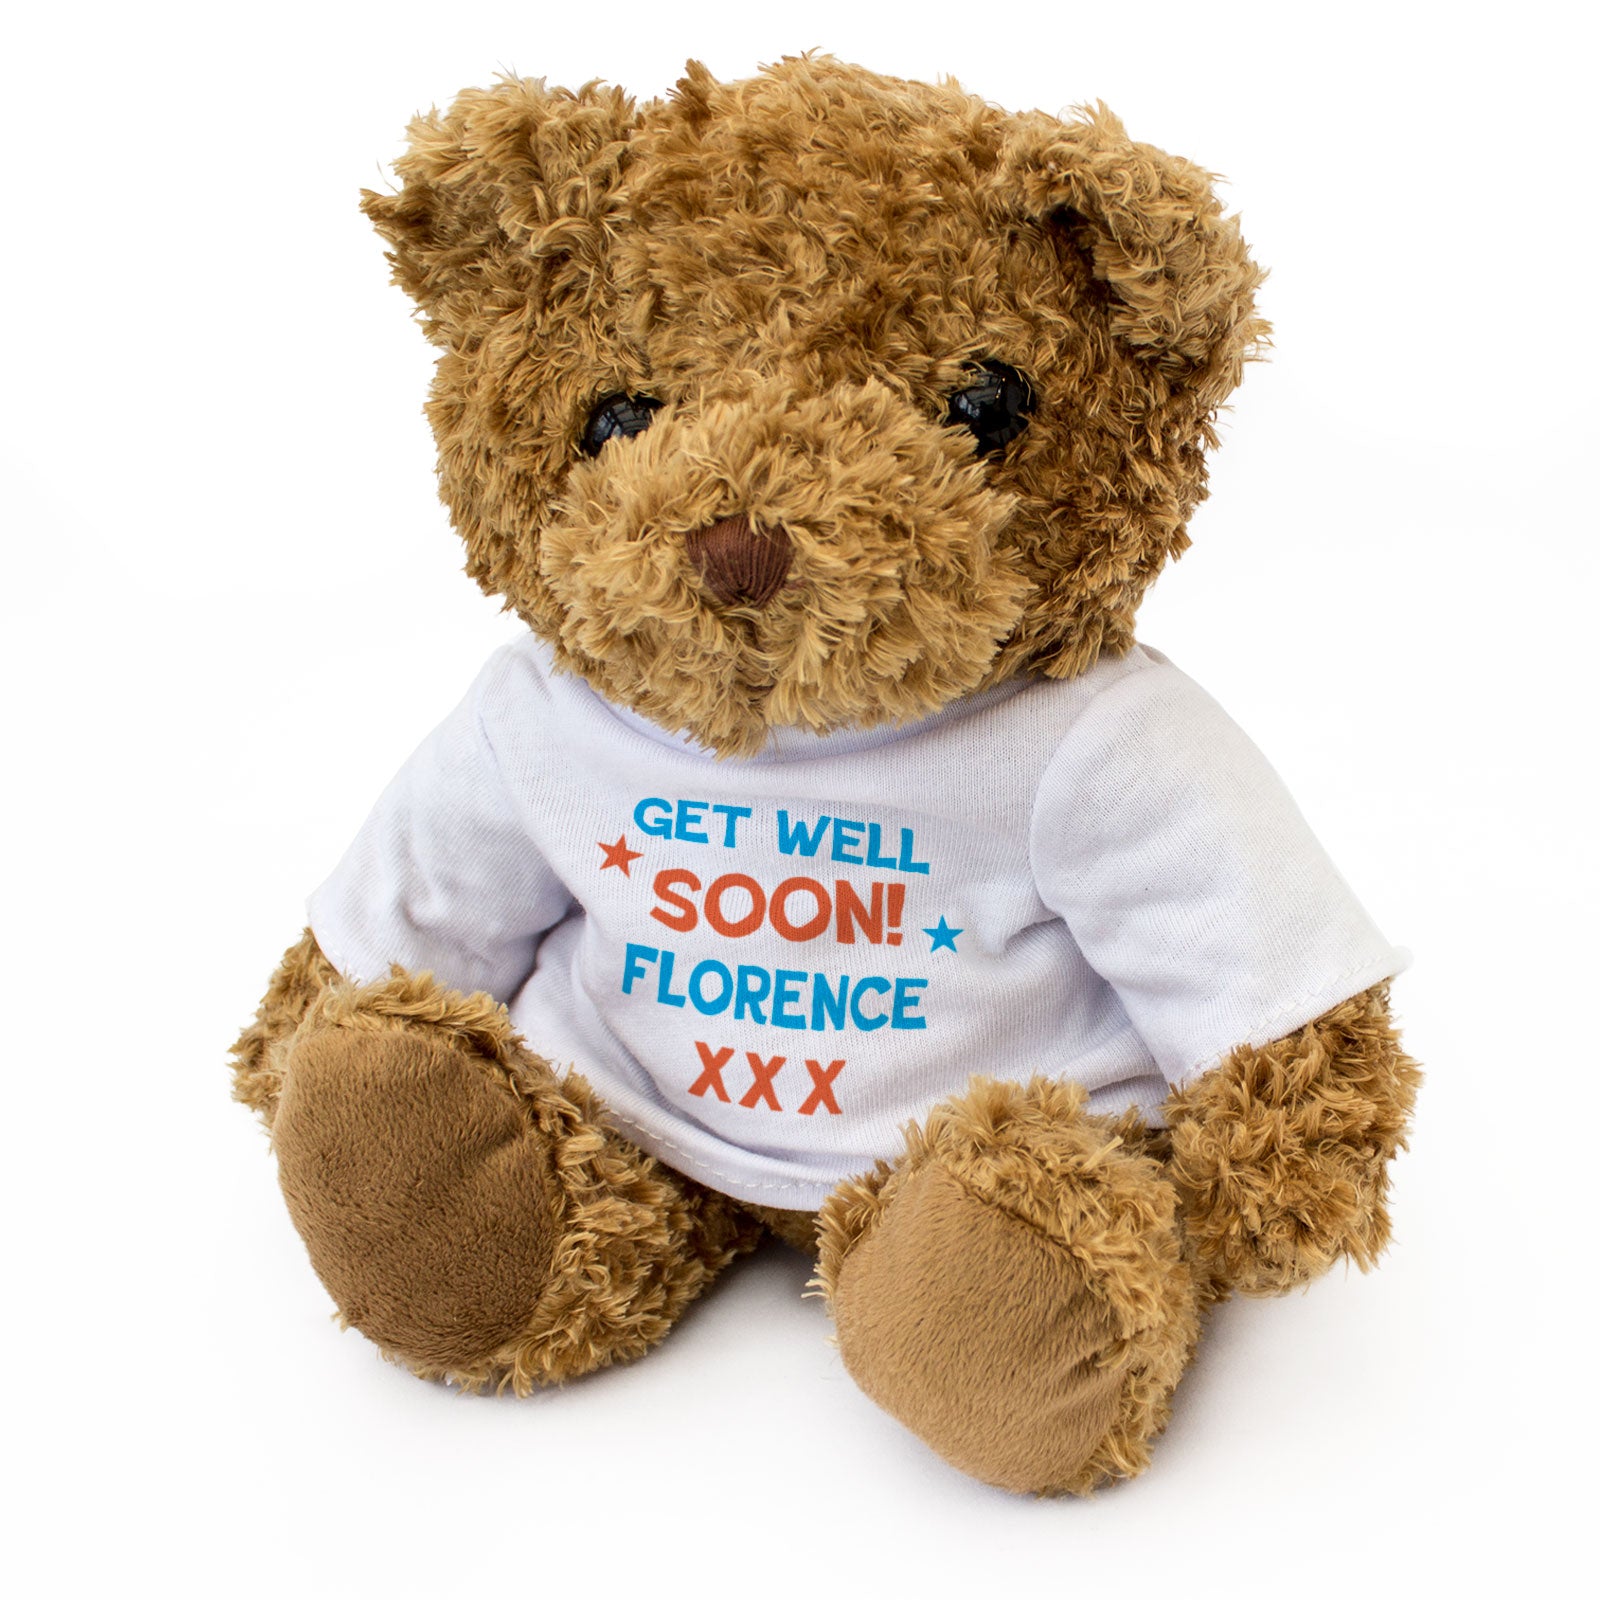 Get Well Soon Florence - Teddy Bear